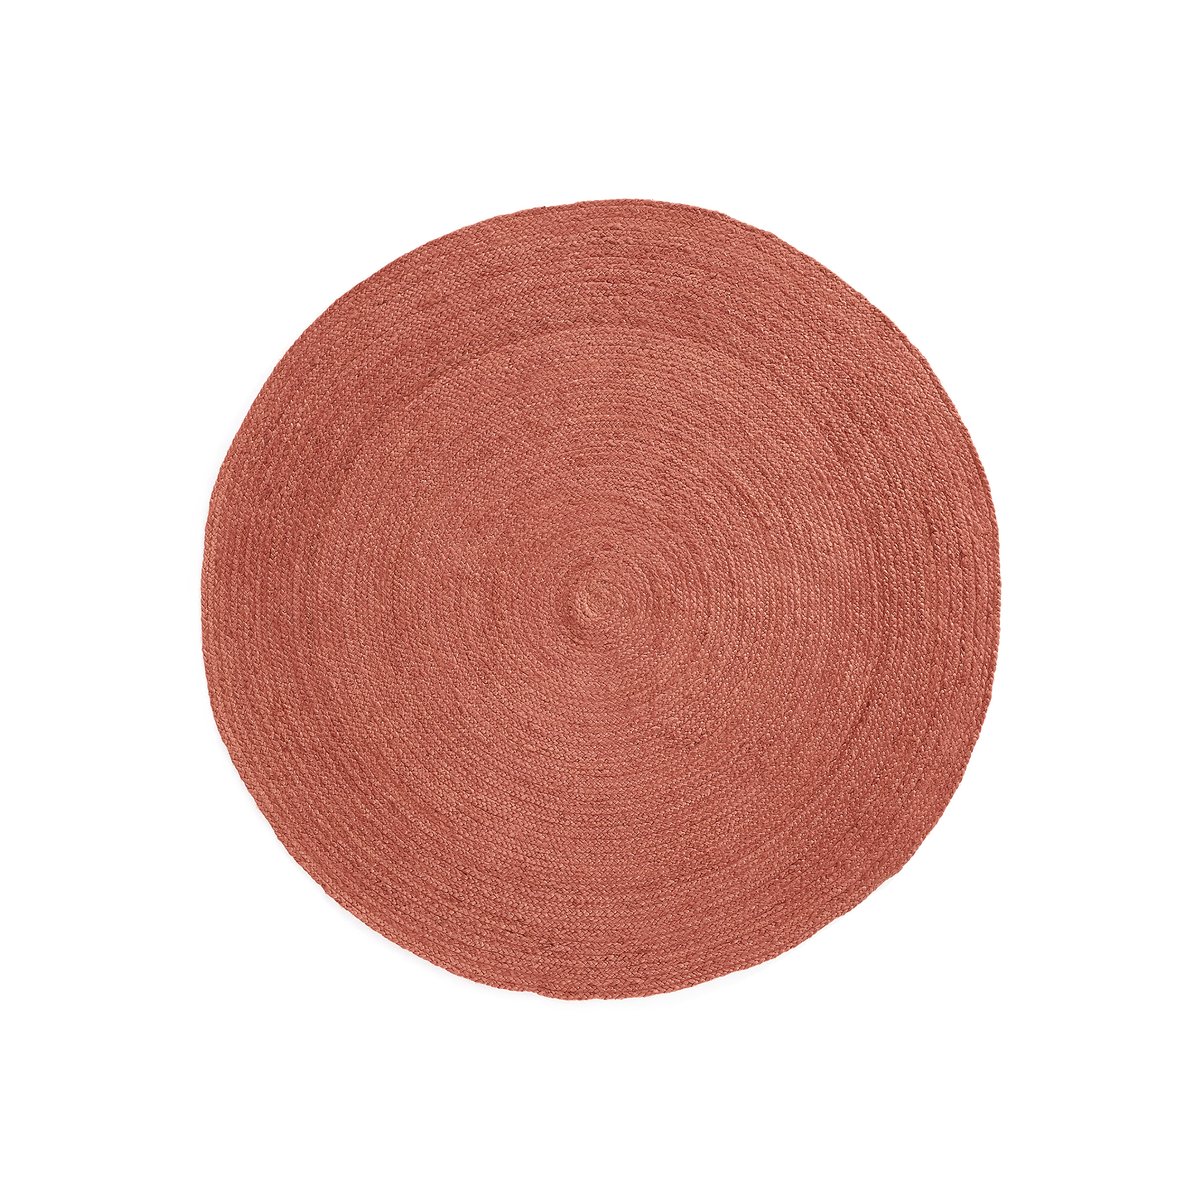 Ковер La Redoute Круглый из цветного джута Bissaka  см диаметр 160 см оранжевый, размер диаметр 160 см - фото 1